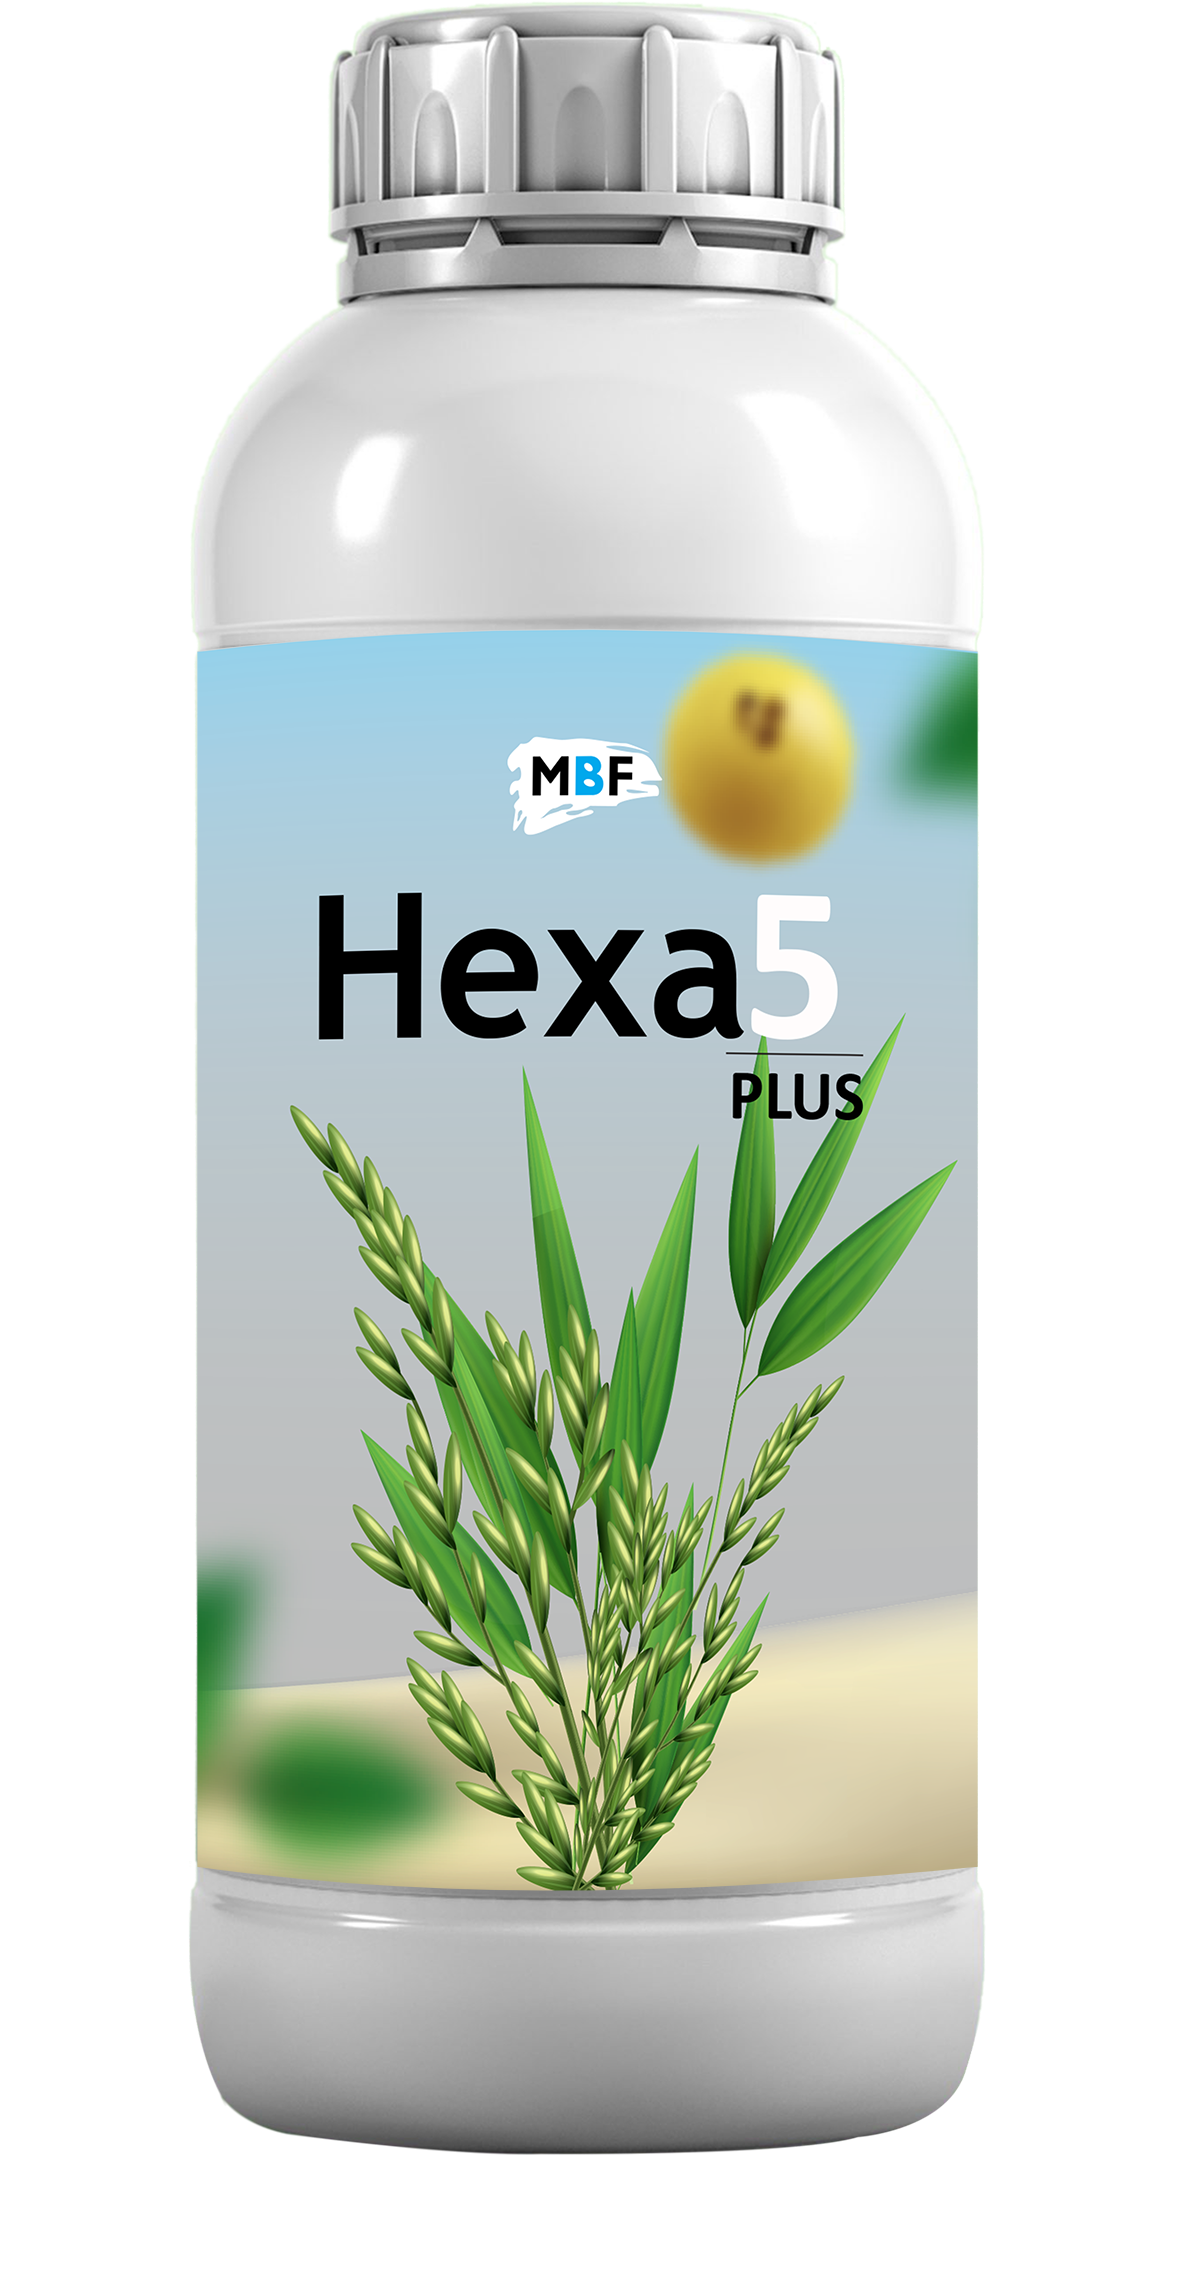 Hexa 5 Plus